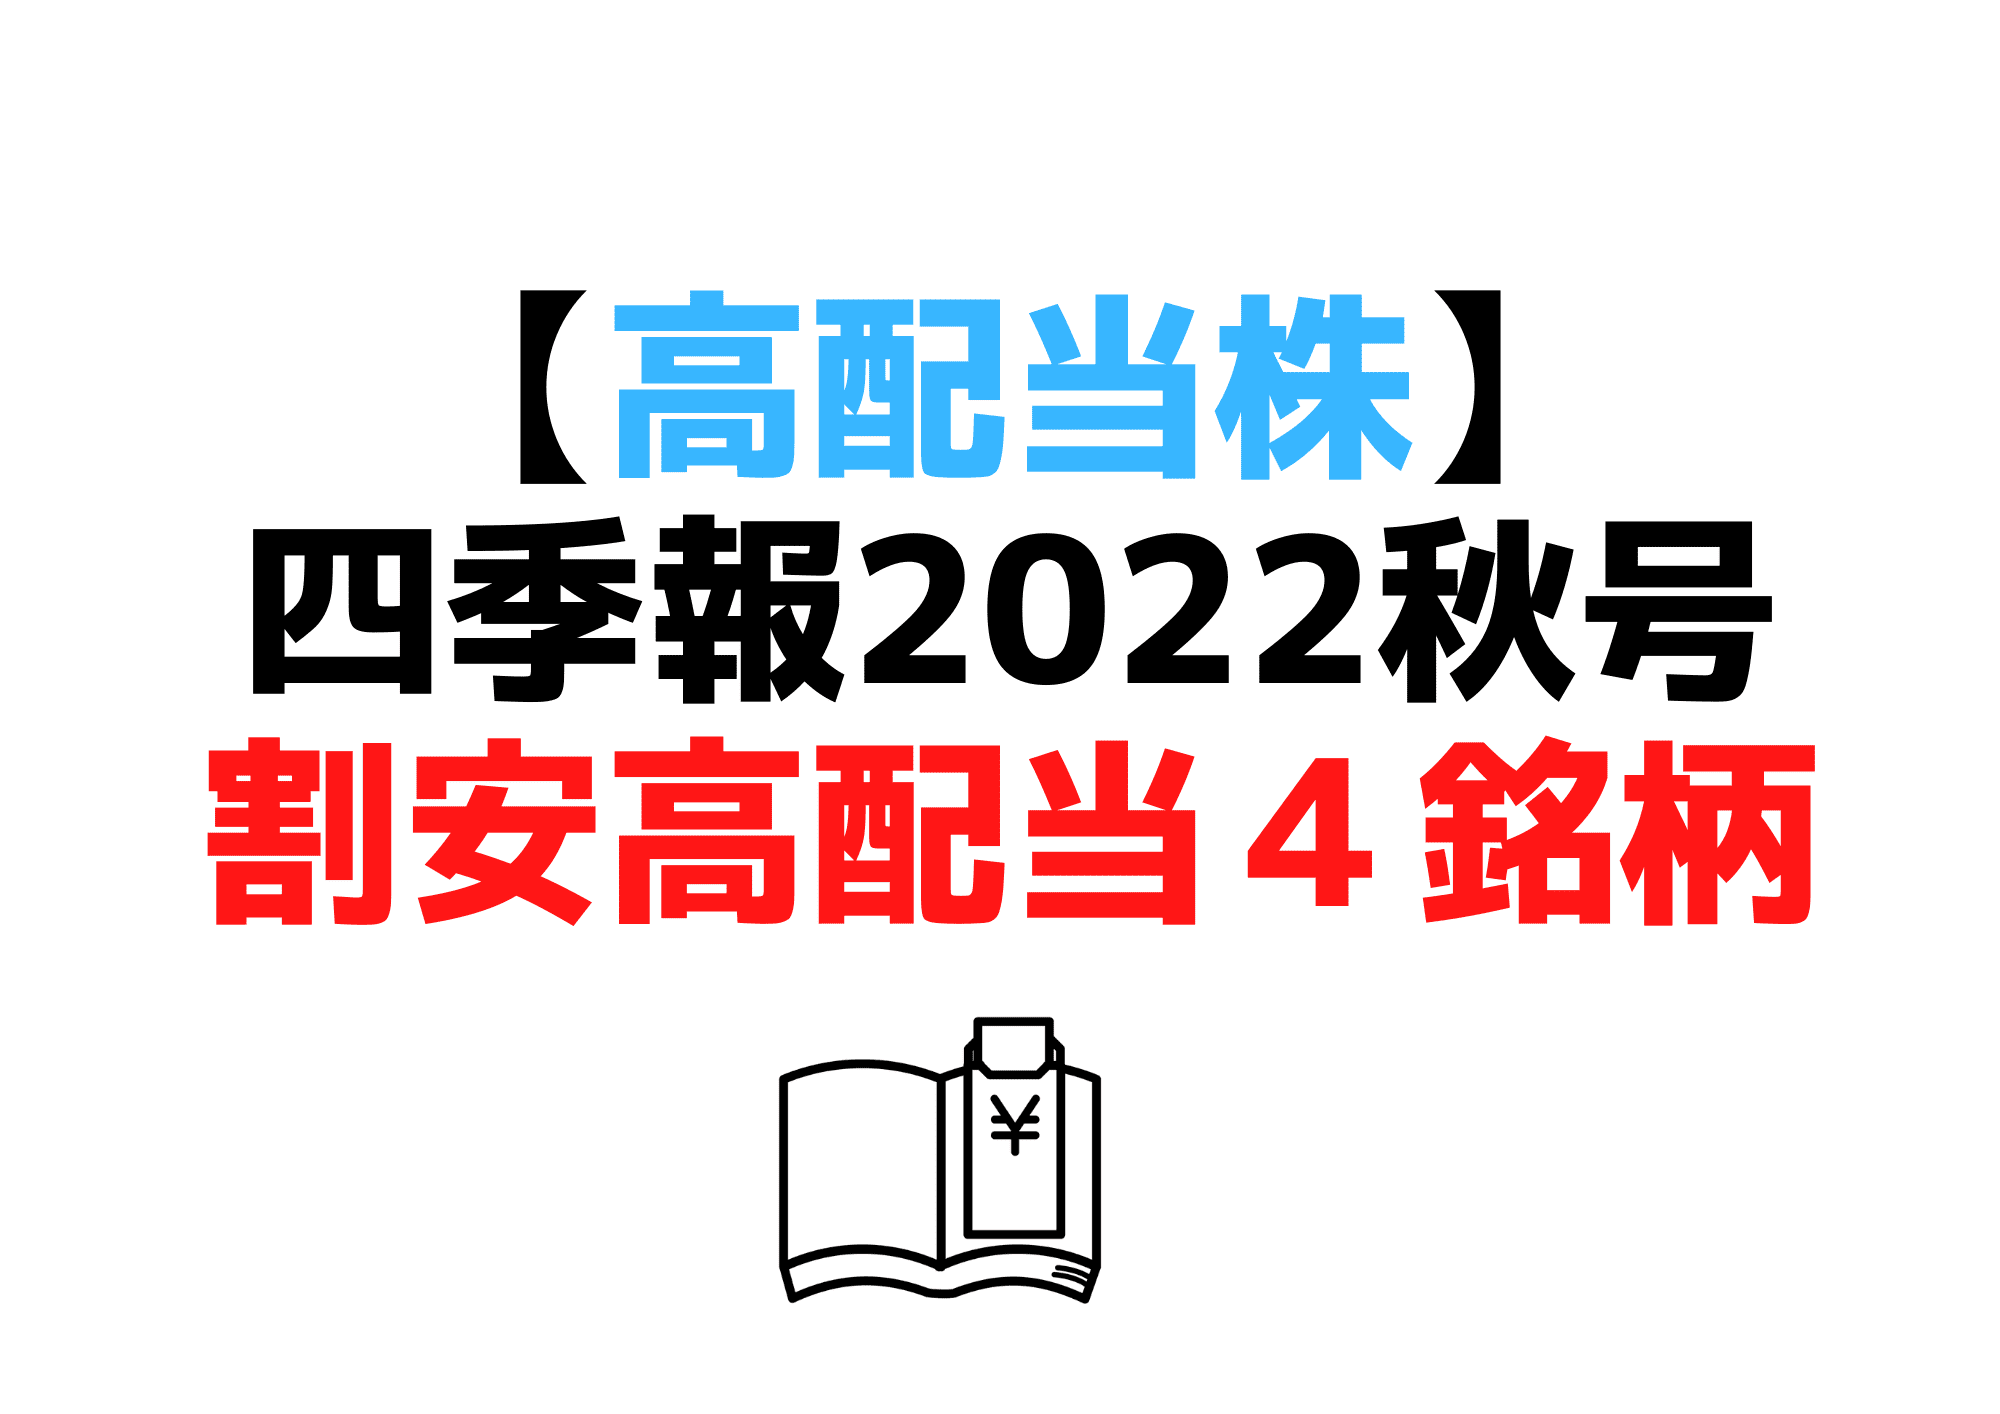 四季報2022秋号高配当